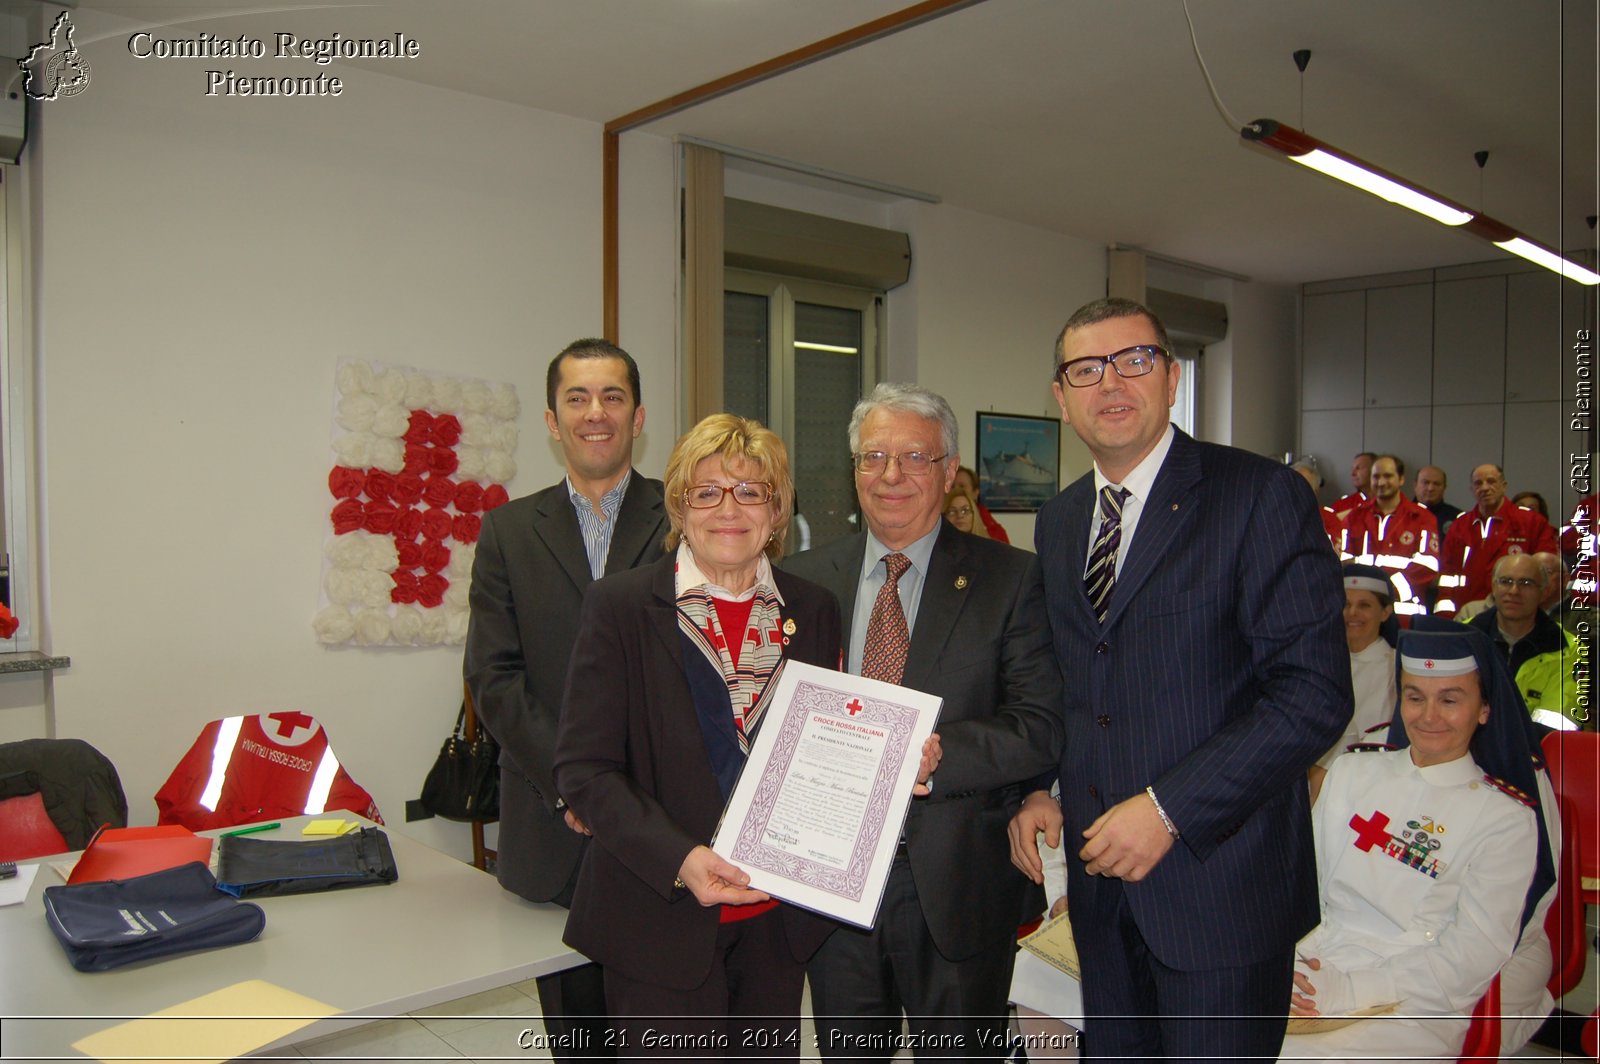 Canelli 21 Gennaio 2014 - Premiazione Volontari - Comitato Regionale del Piemonte